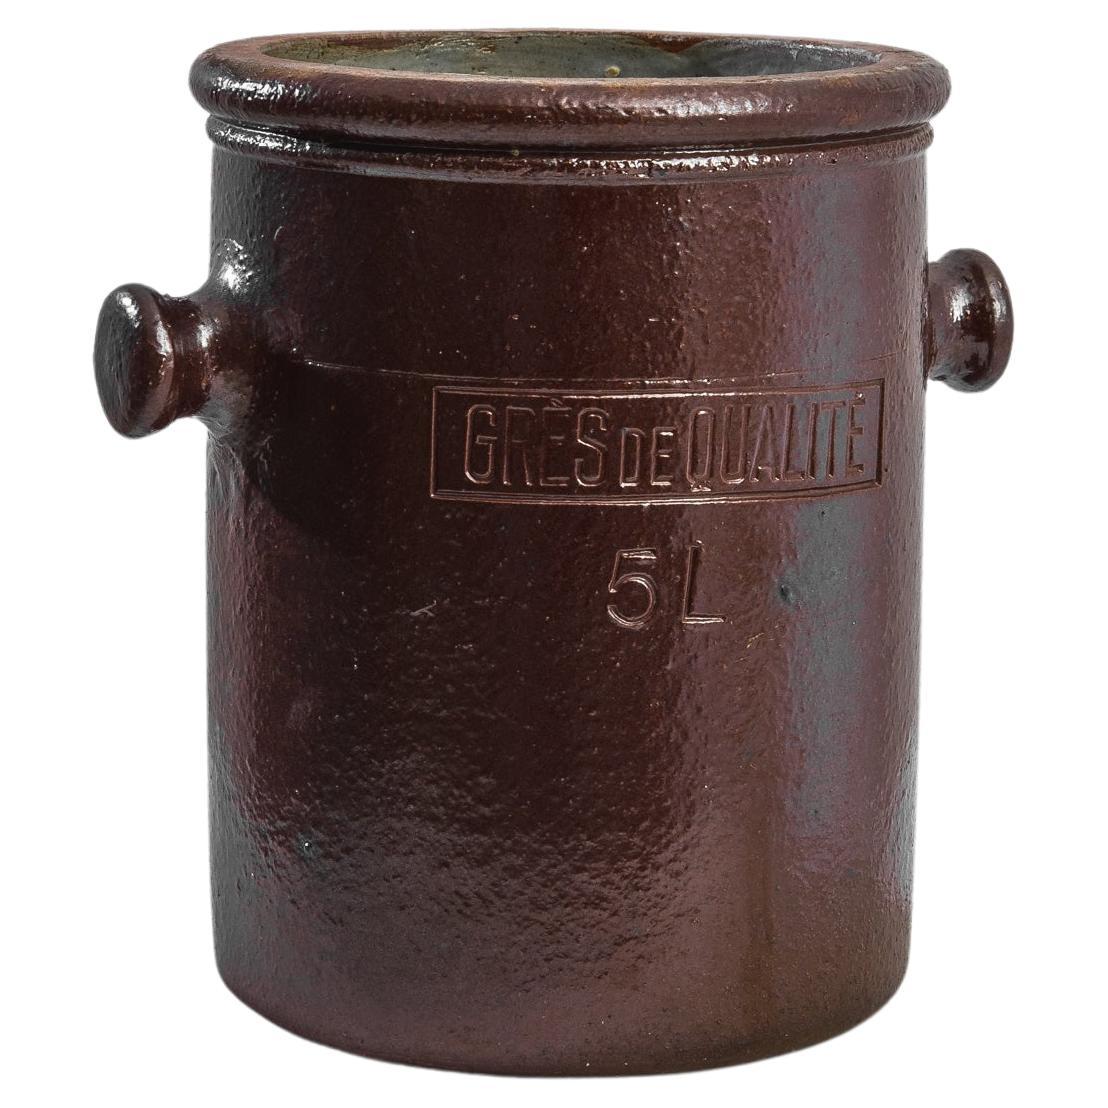 1930s Belgian Ceramic Pot For Sale